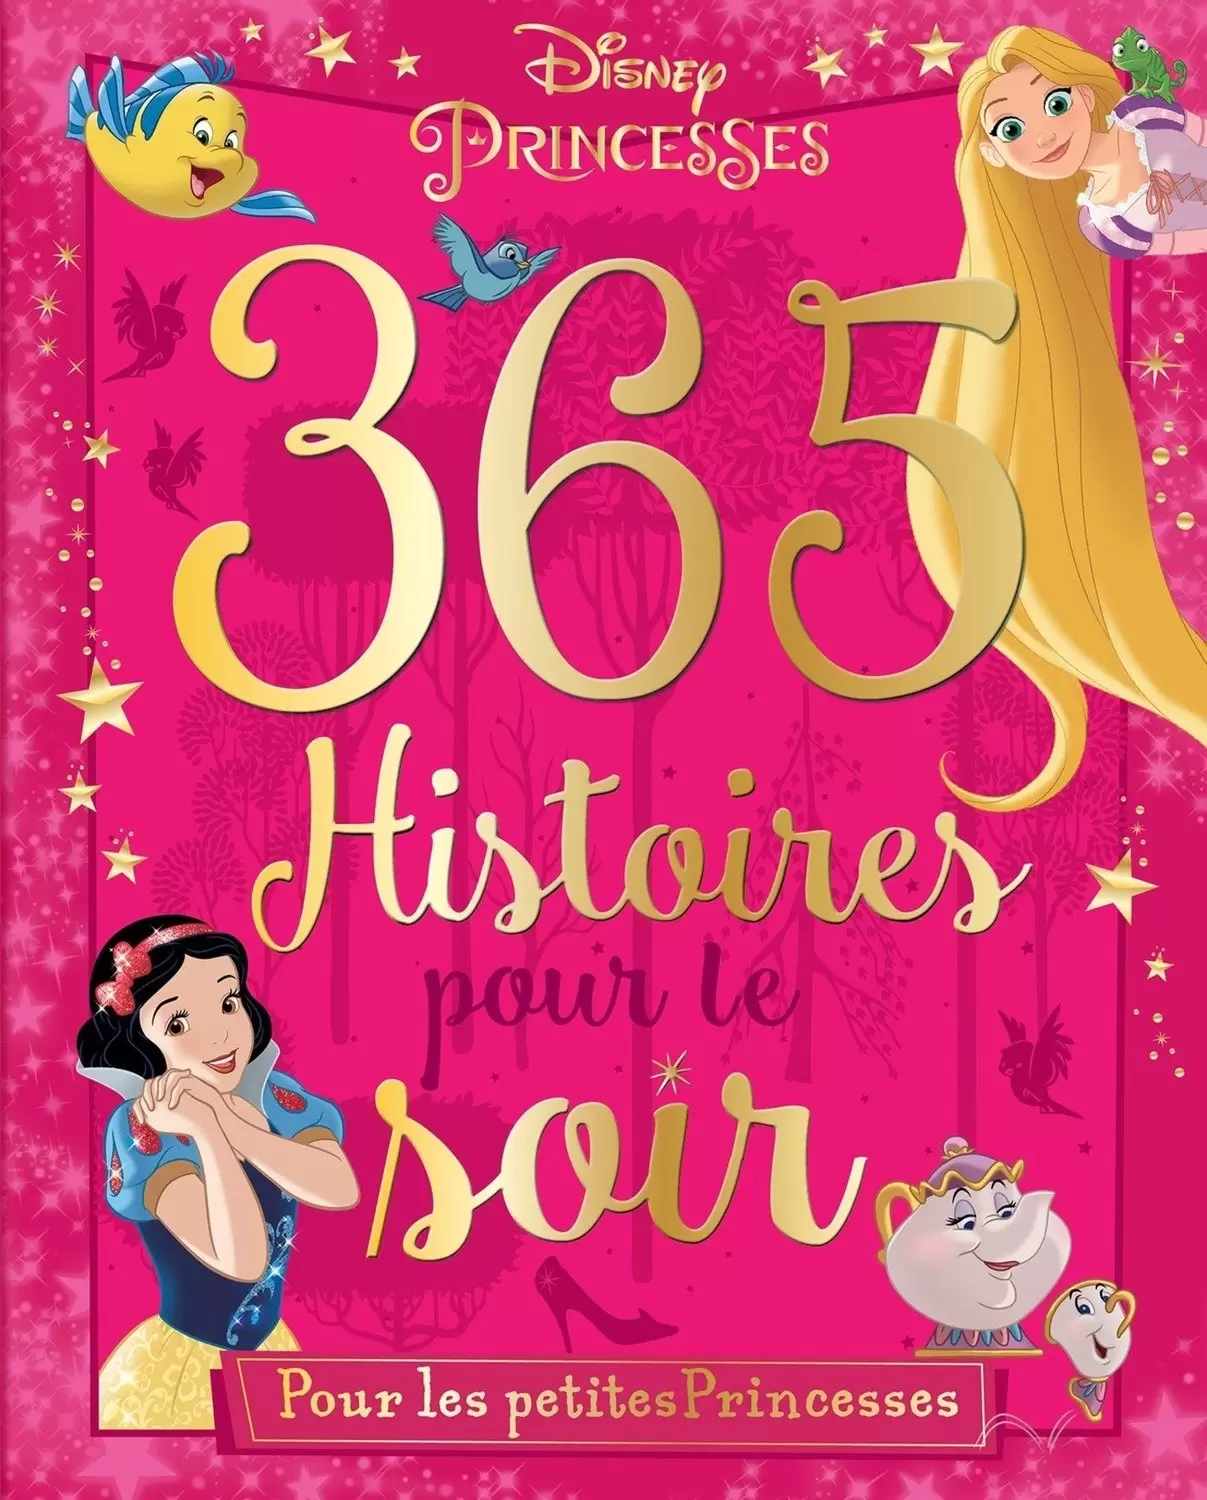 Disney - Histoires pour le soir et pour la semaine - 365 Histoires pour le soir - Pour les petites Princesses